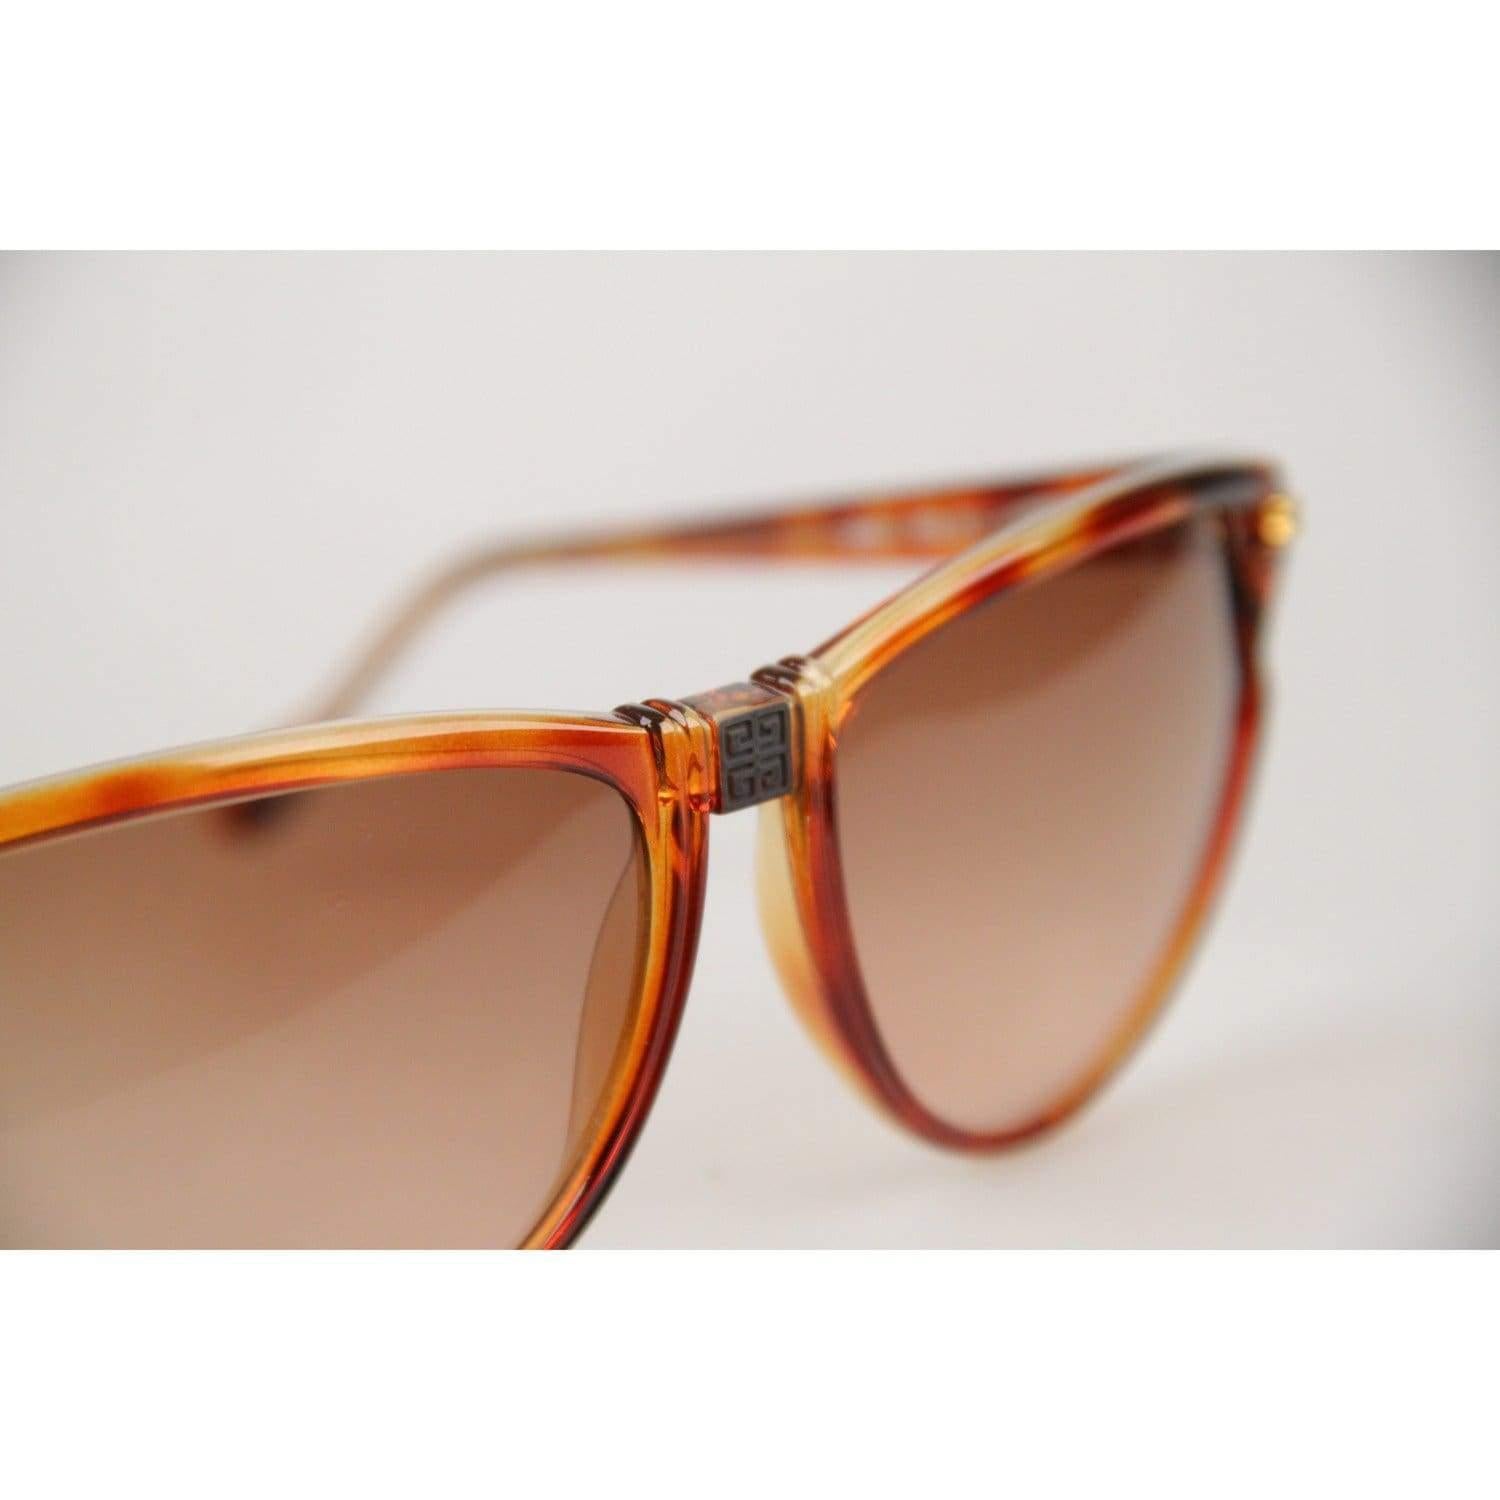 Givenchy Paris Vintage Brown Women Sunglasses mod SG01 COL 02 For Sale 4